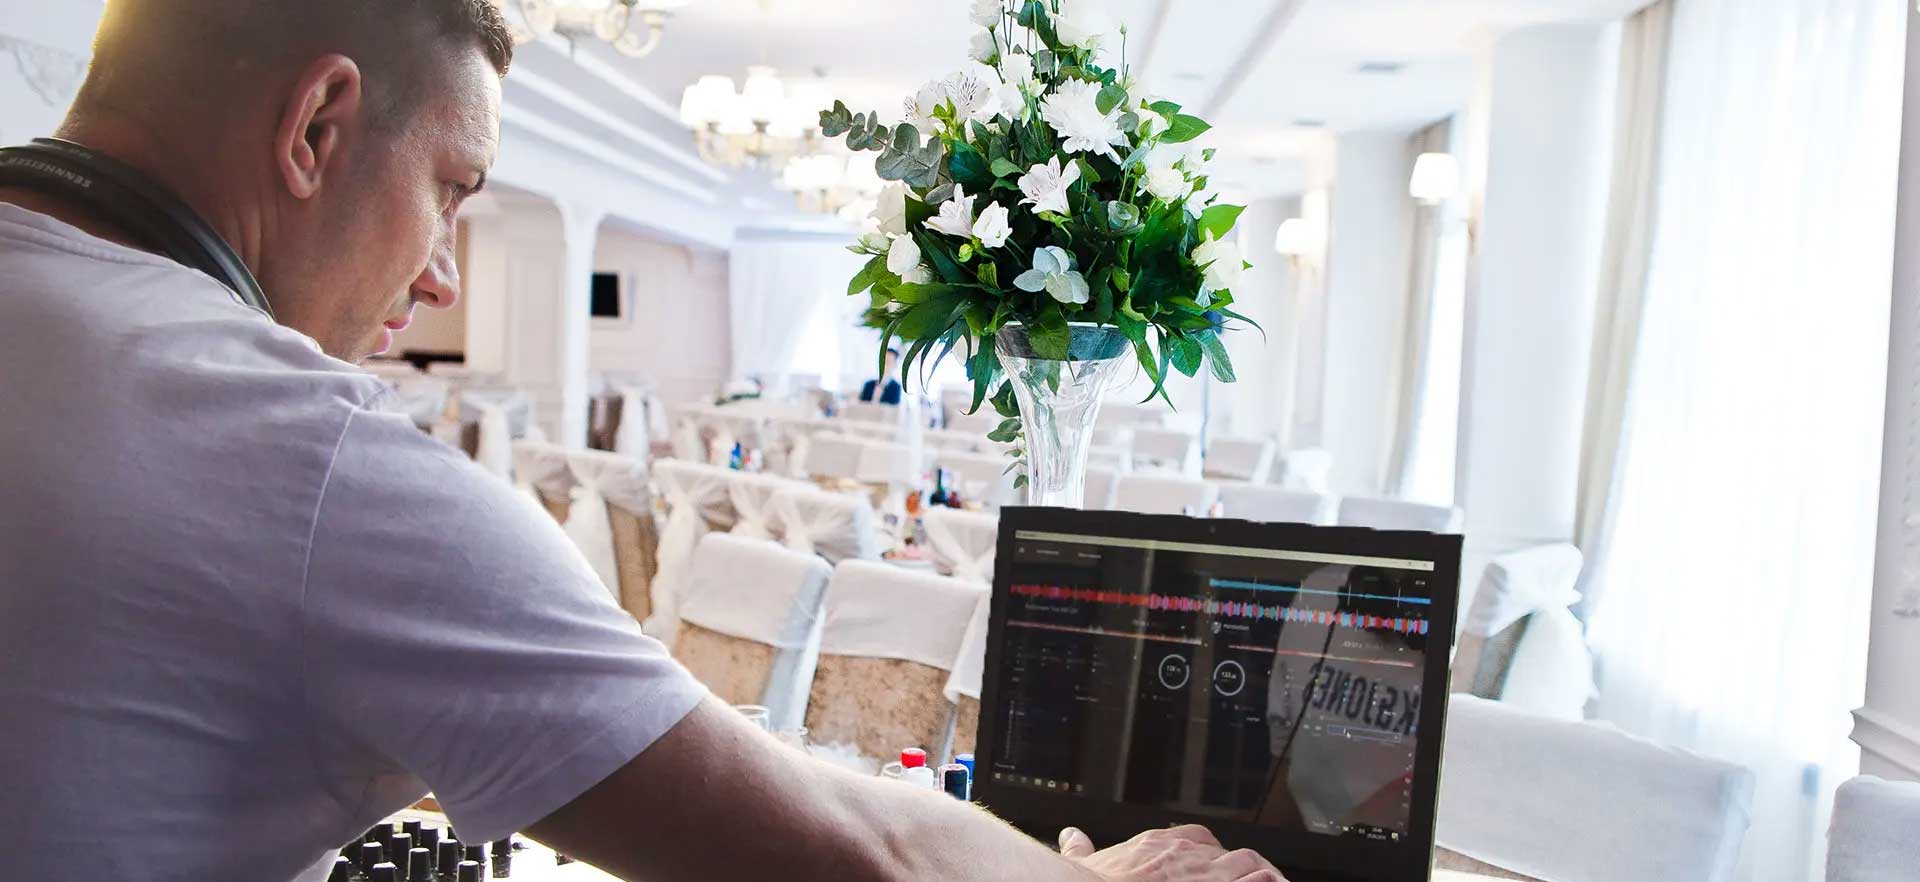 JW Musikdienst | DJ & Ton- und Lichttechnik für Hochzeiten, Events, Firmenfeiern uvm.